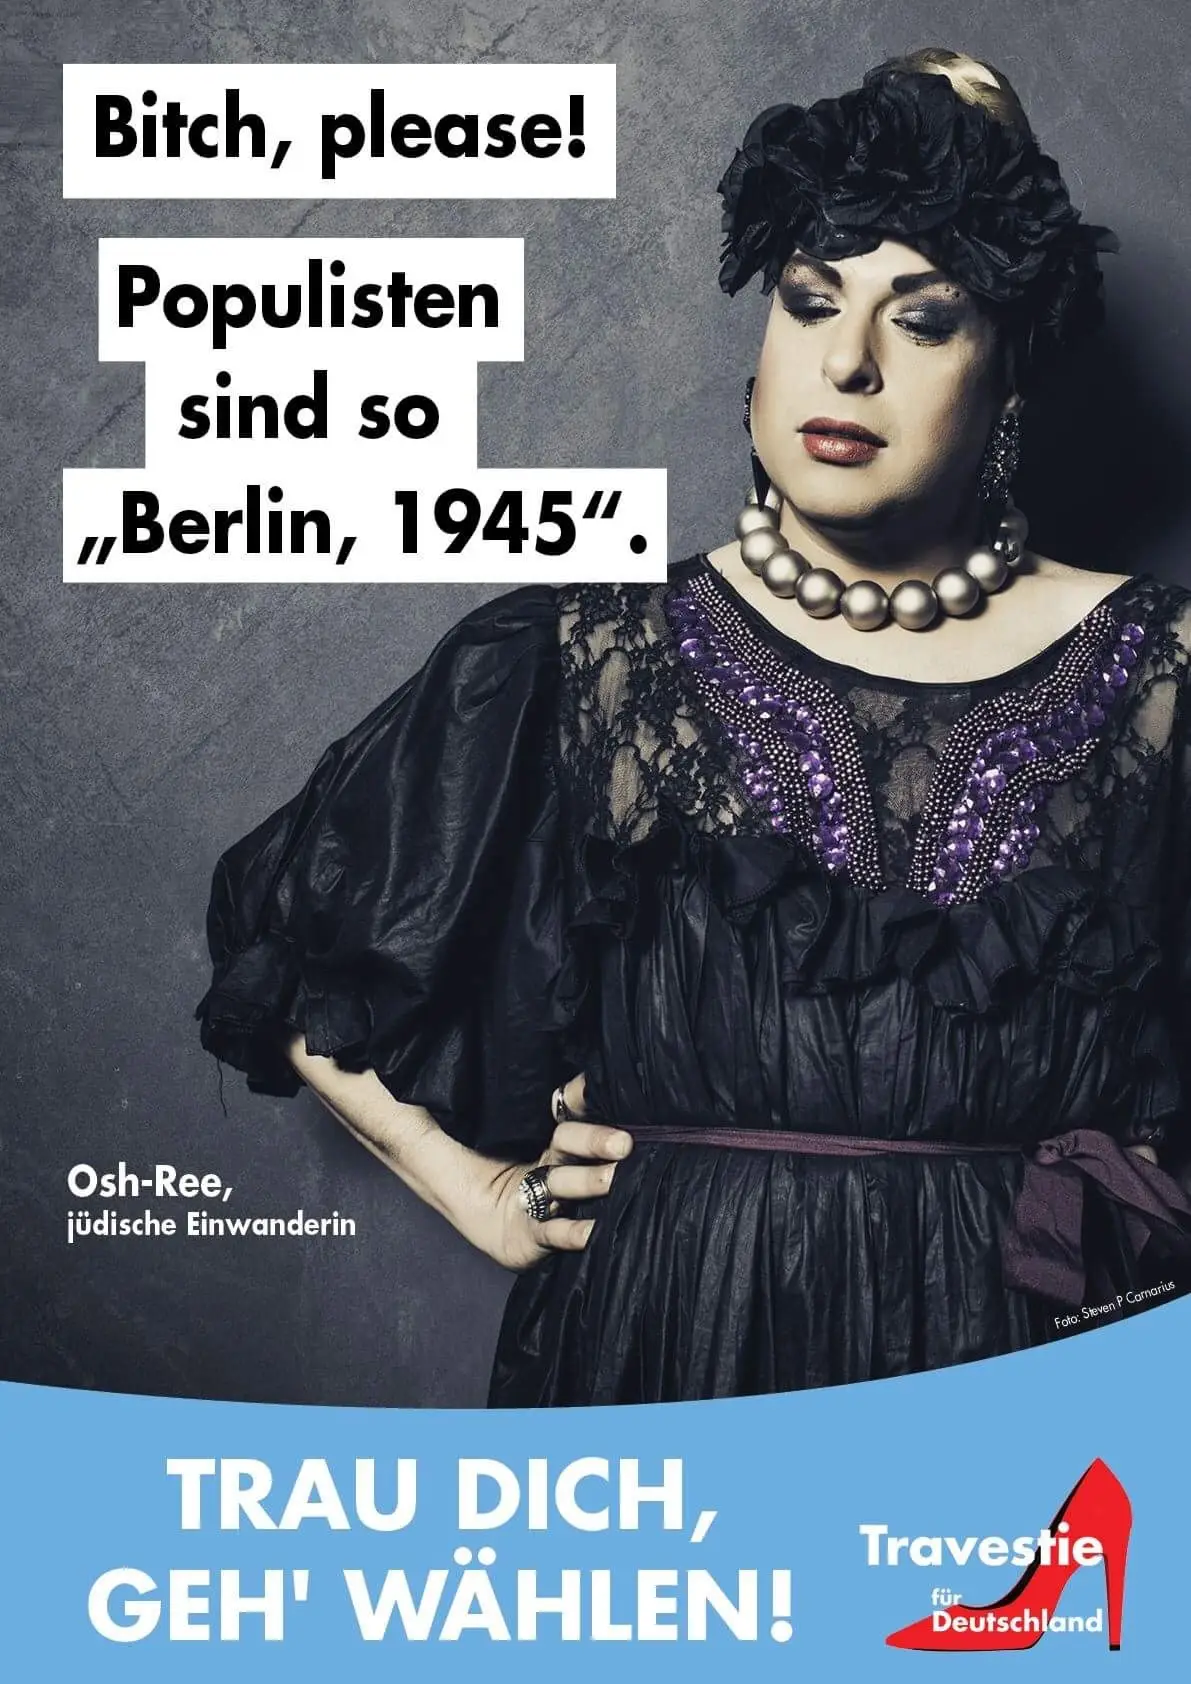 Osh-Ree Travestie für Deutschland fotografiert von Steven P. Carnarius Grafik Designer und Fotograf aus Berlin und Bamberg